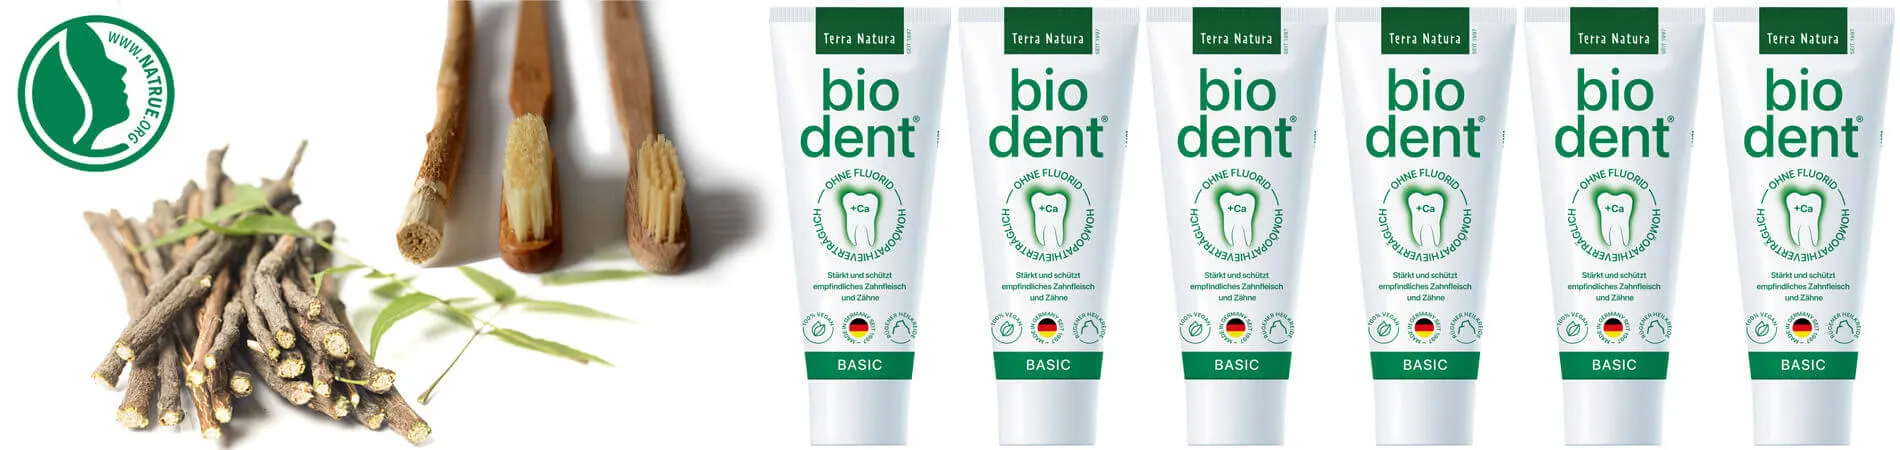 Biodent Basics Pasta de dentes sem fluor comprar Bio dent...